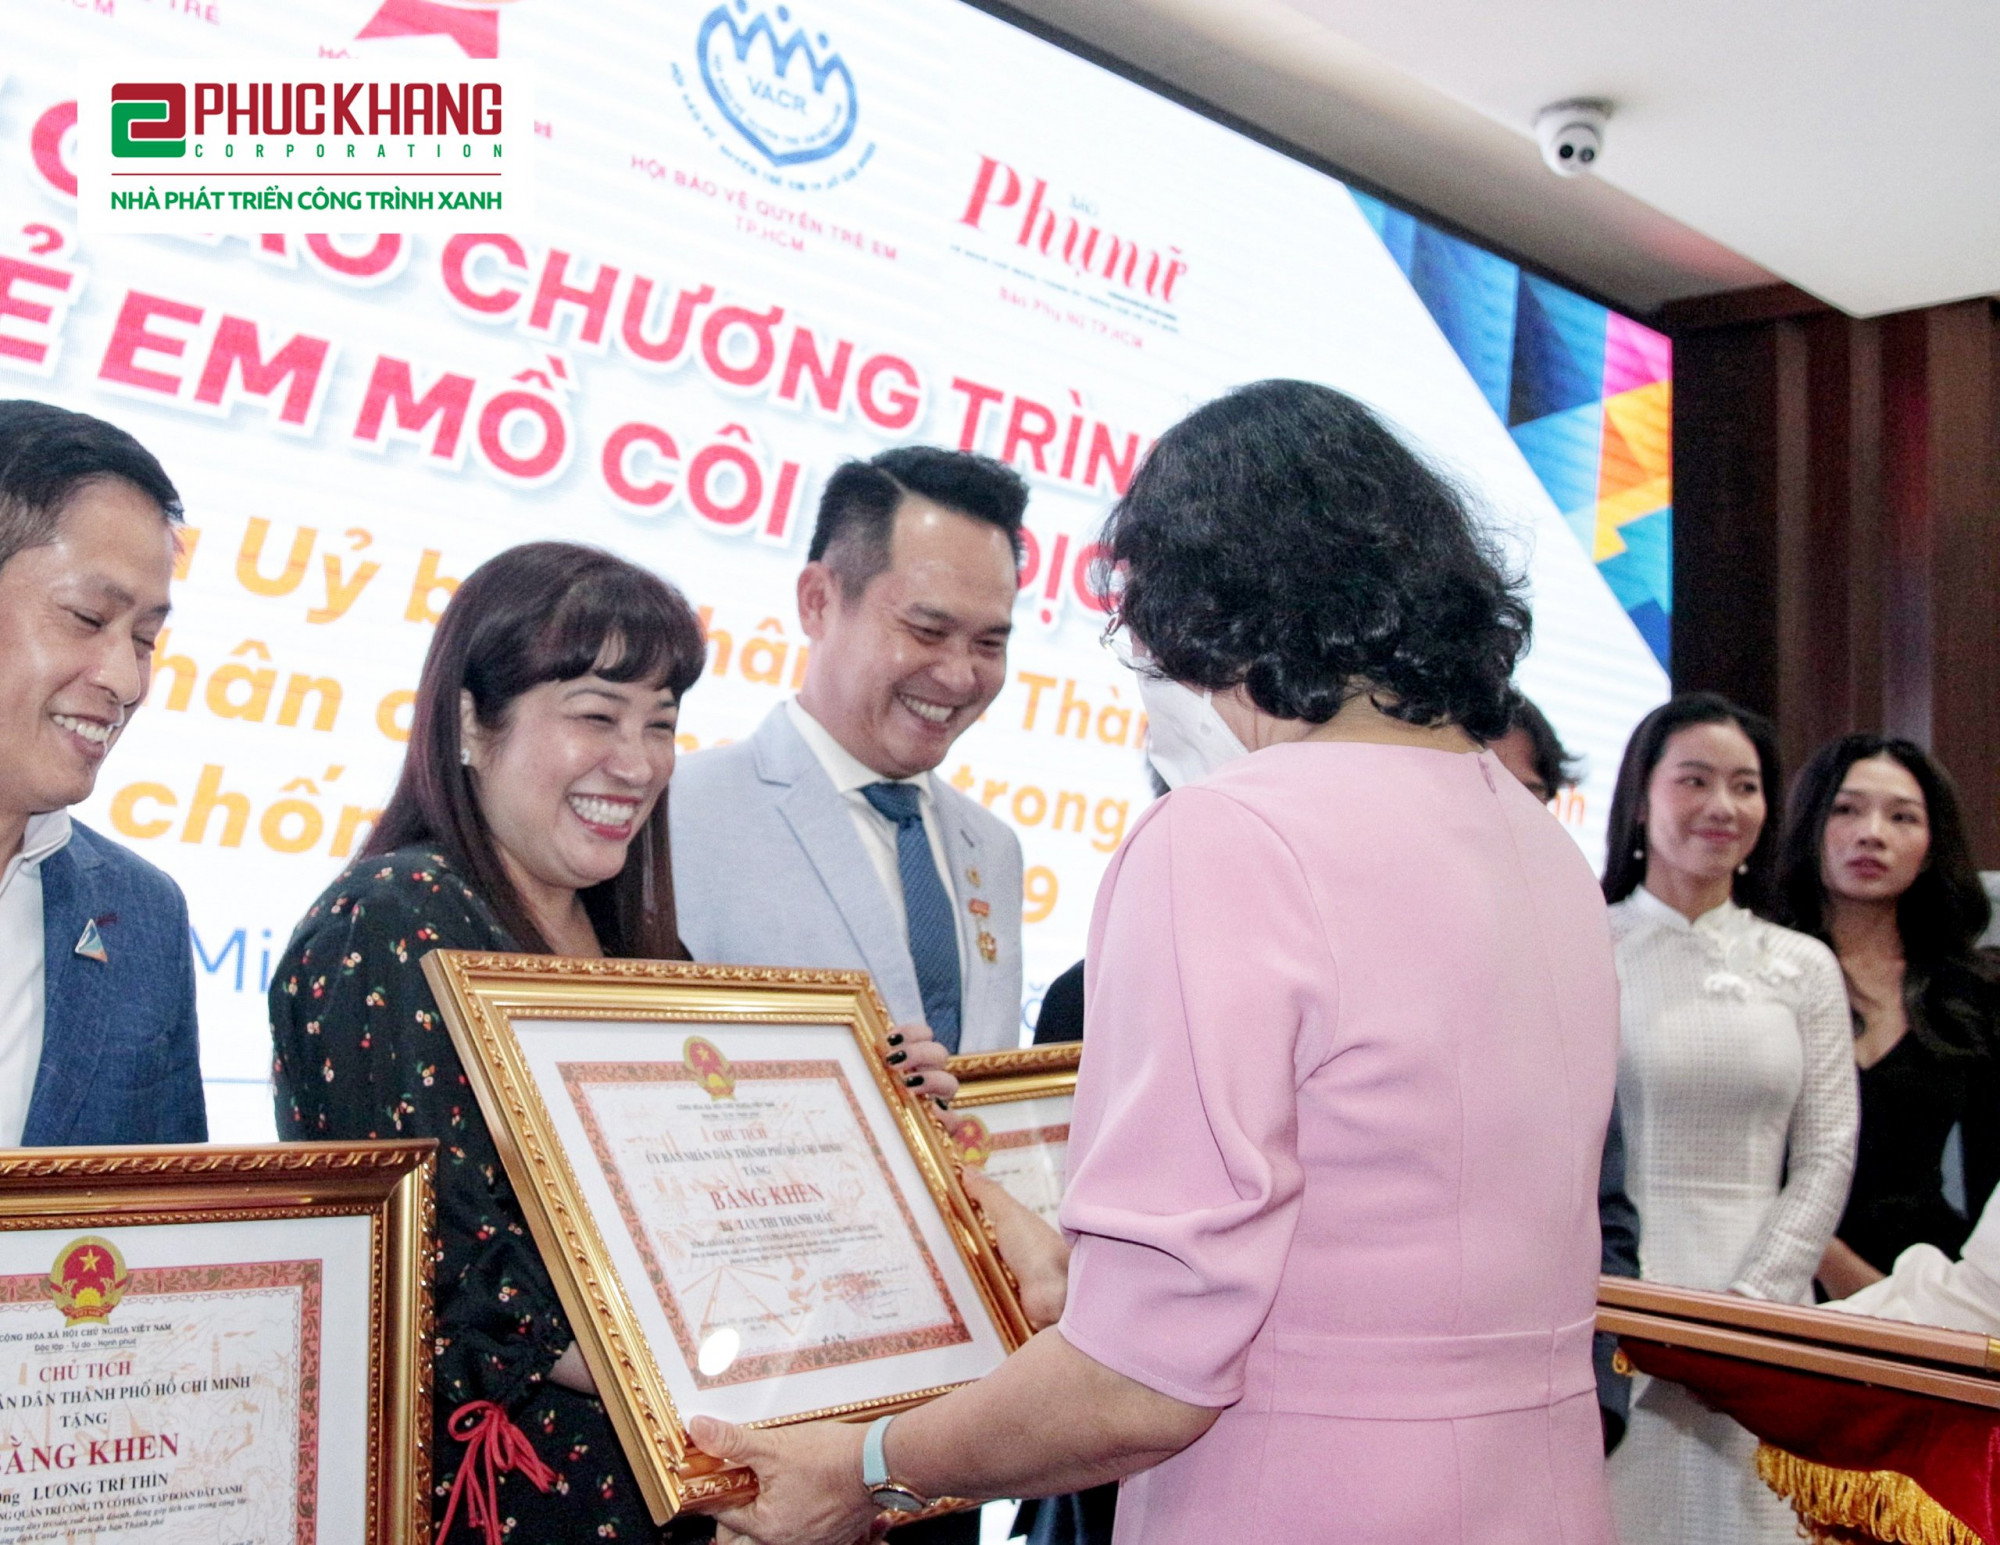 Bà Lưu Thị Thanh Mẫu - CEO Phuc Khang Corporation nhận bằng khen từ đại diện UBND TPHCM - Ảnh: PK